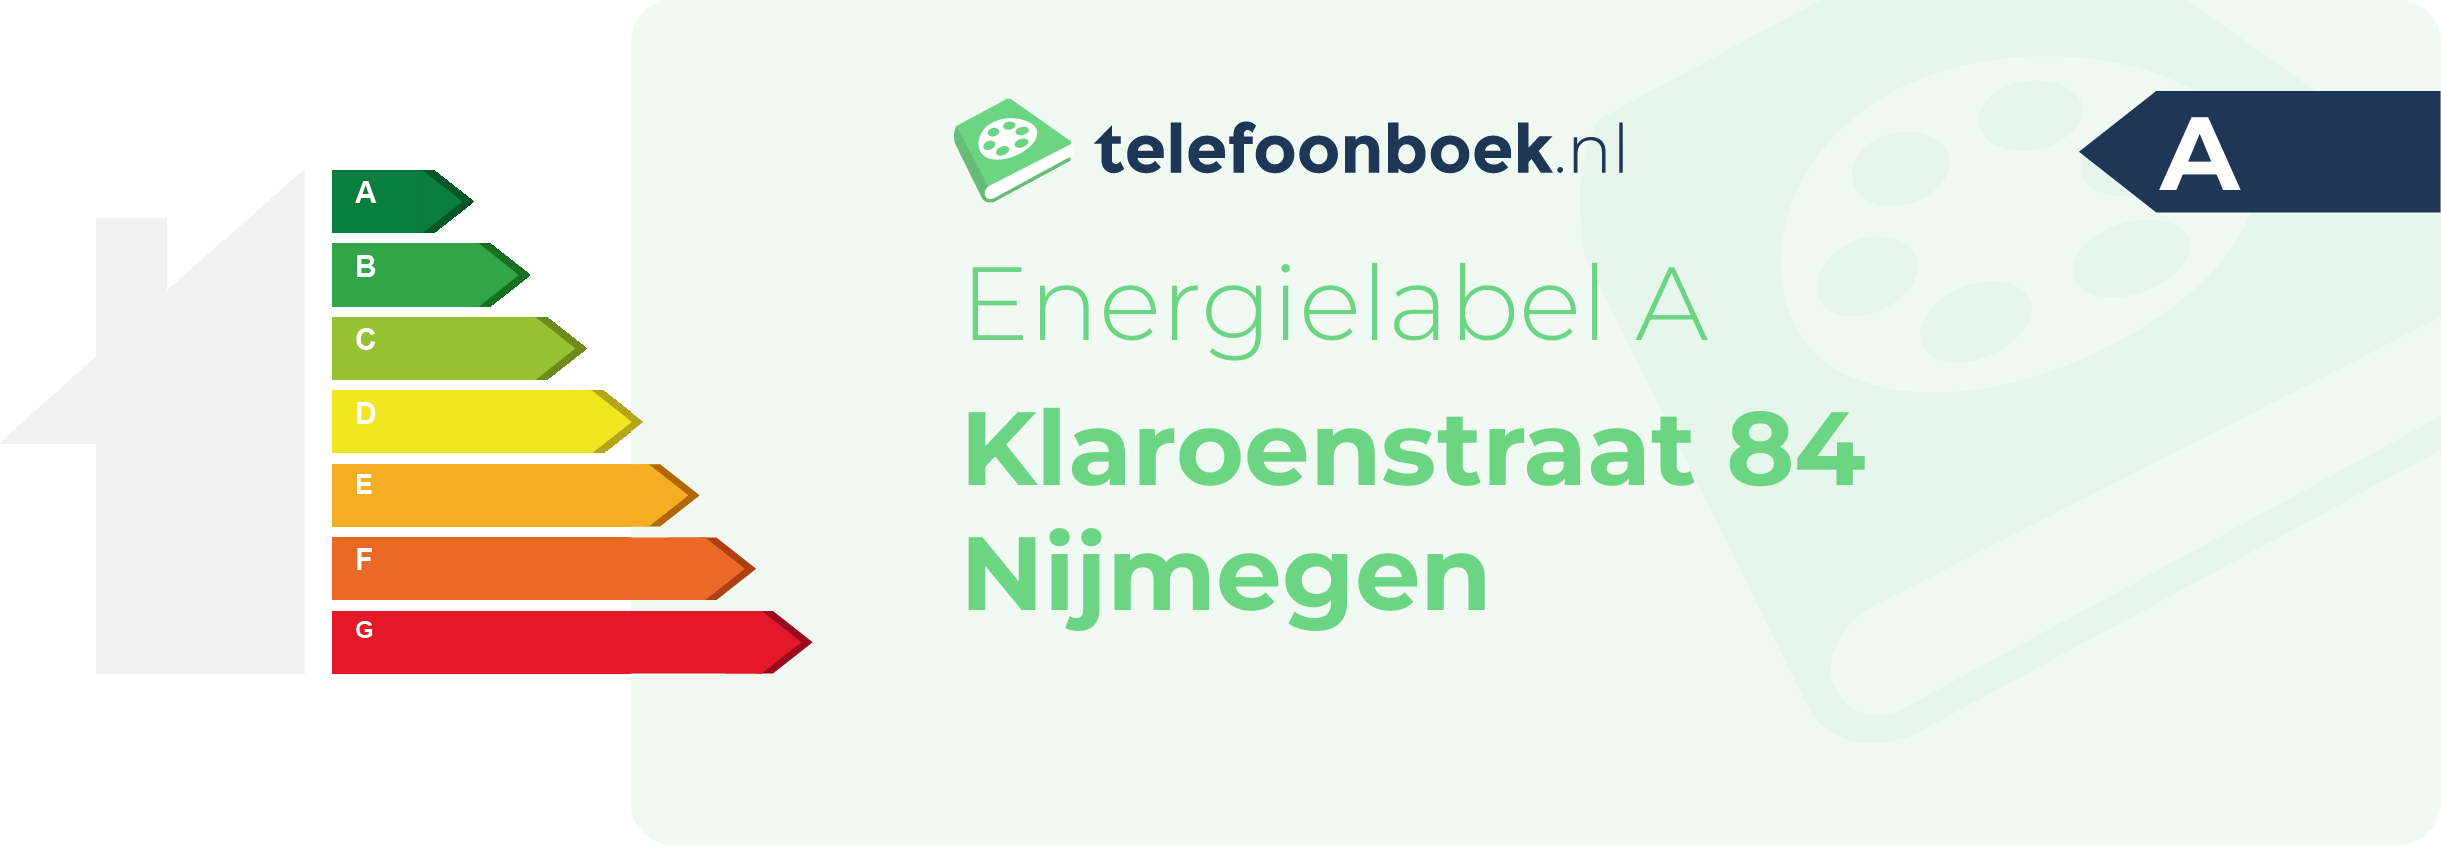 Energielabel Klaroenstraat 84 Nijmegen